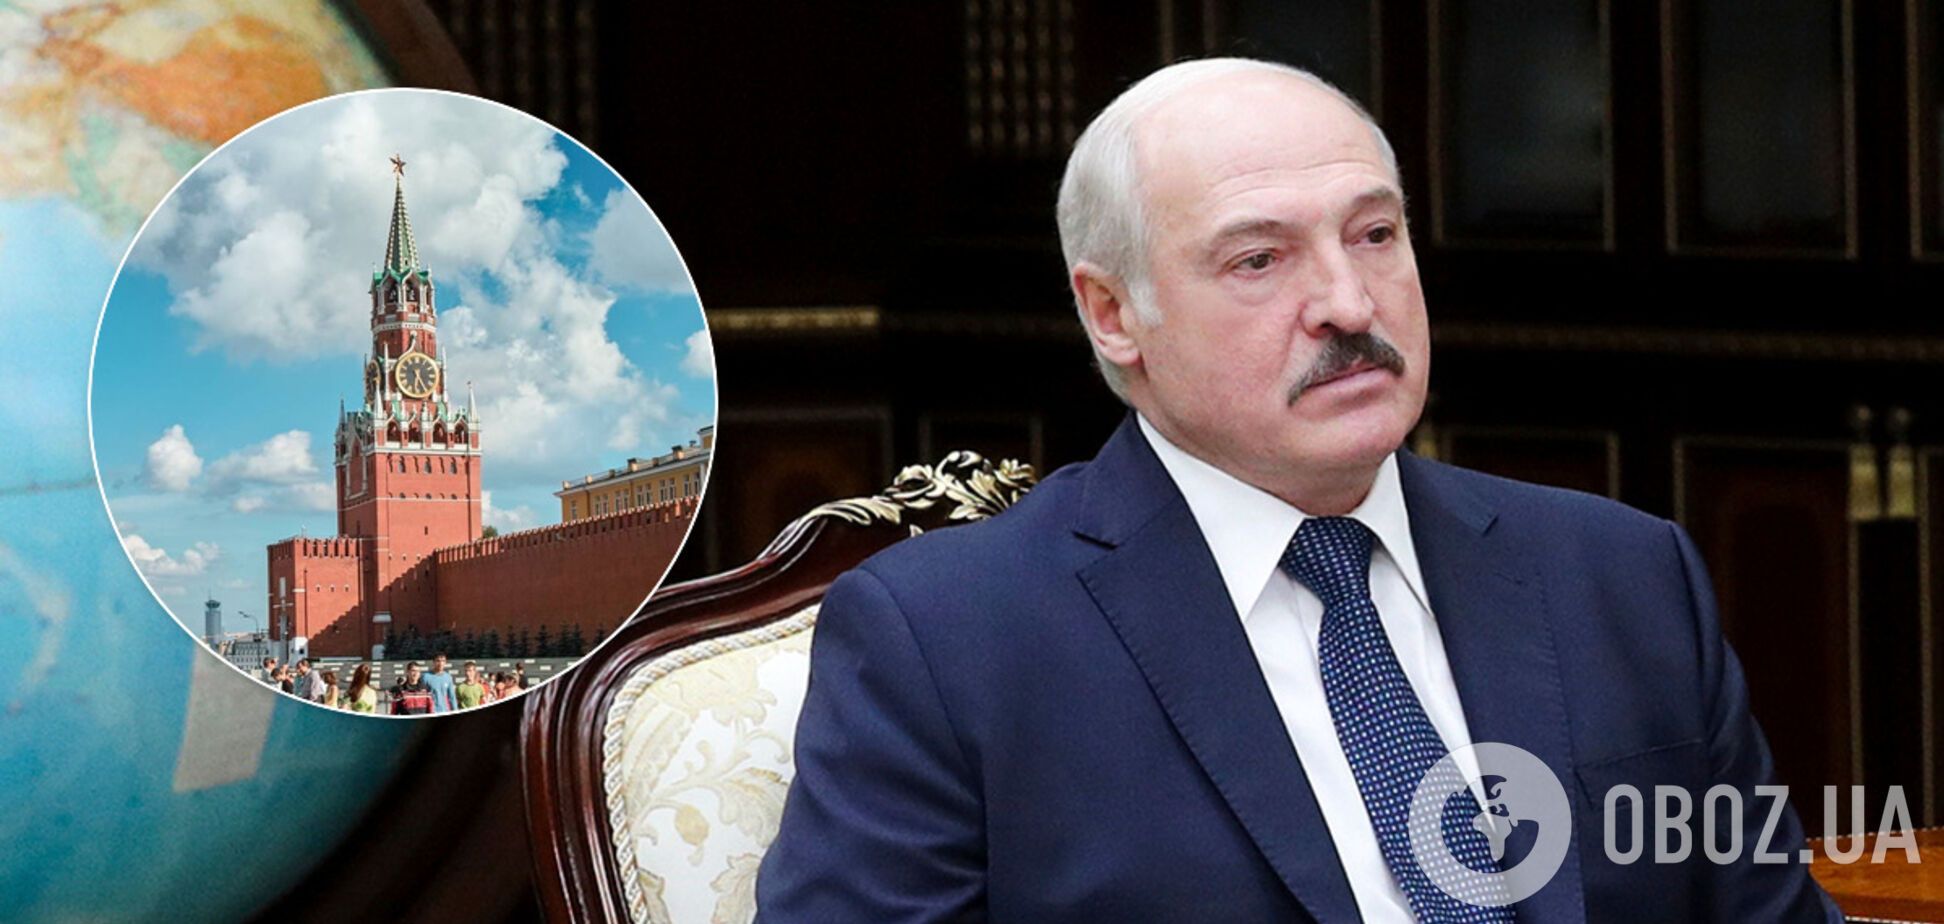 Олександр Лукашенко вважає, що в вибори втручаються з-за кордону